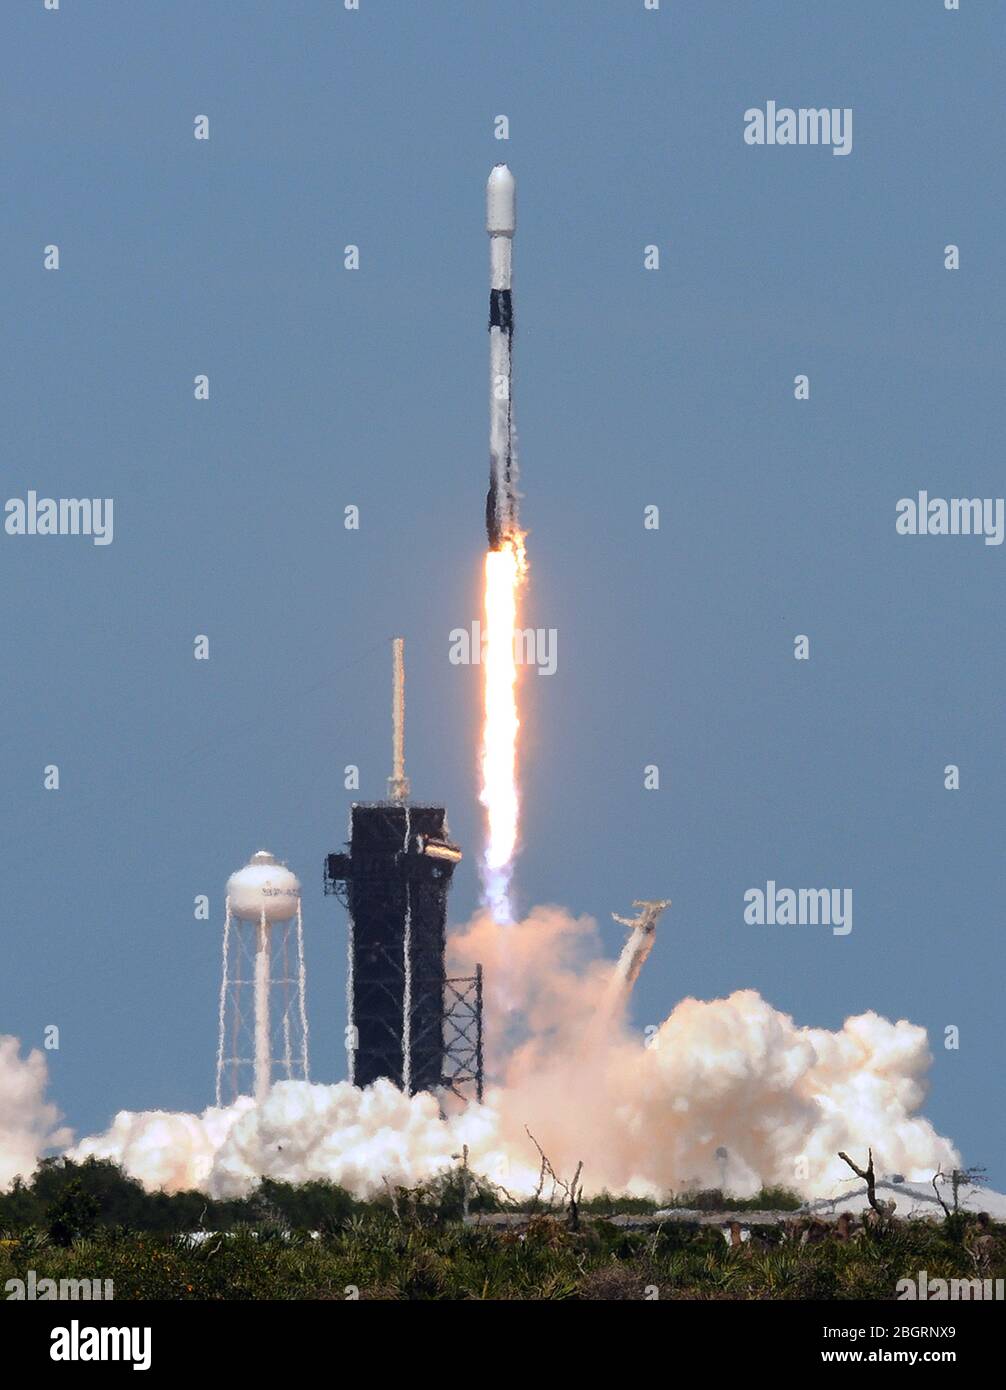 22 avril 2020 - Kennedy Space Center, Floride, États-Unis - une fusée SpaceX Falcon 9 transportant le septième lot de 60 satellites Starlink qui fournira un service Internet mondial lancé avec succès le 22 avril 2020 à partir du PAD 39 A au Kennedy Space Center en Floride. (Paul Hennessy/Alay) Banque D'Images